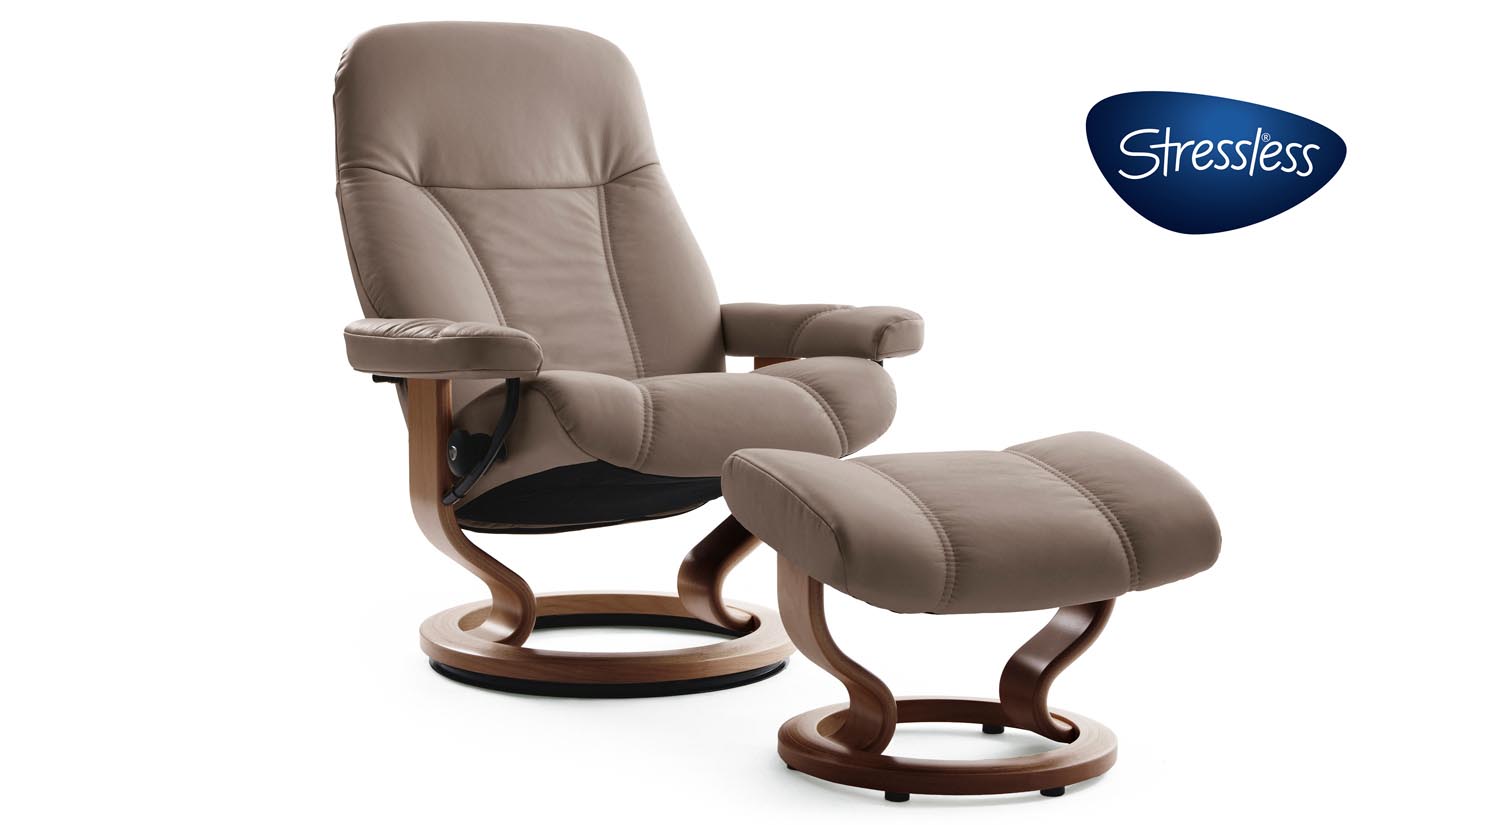 Consul Chair | Circle Furniture